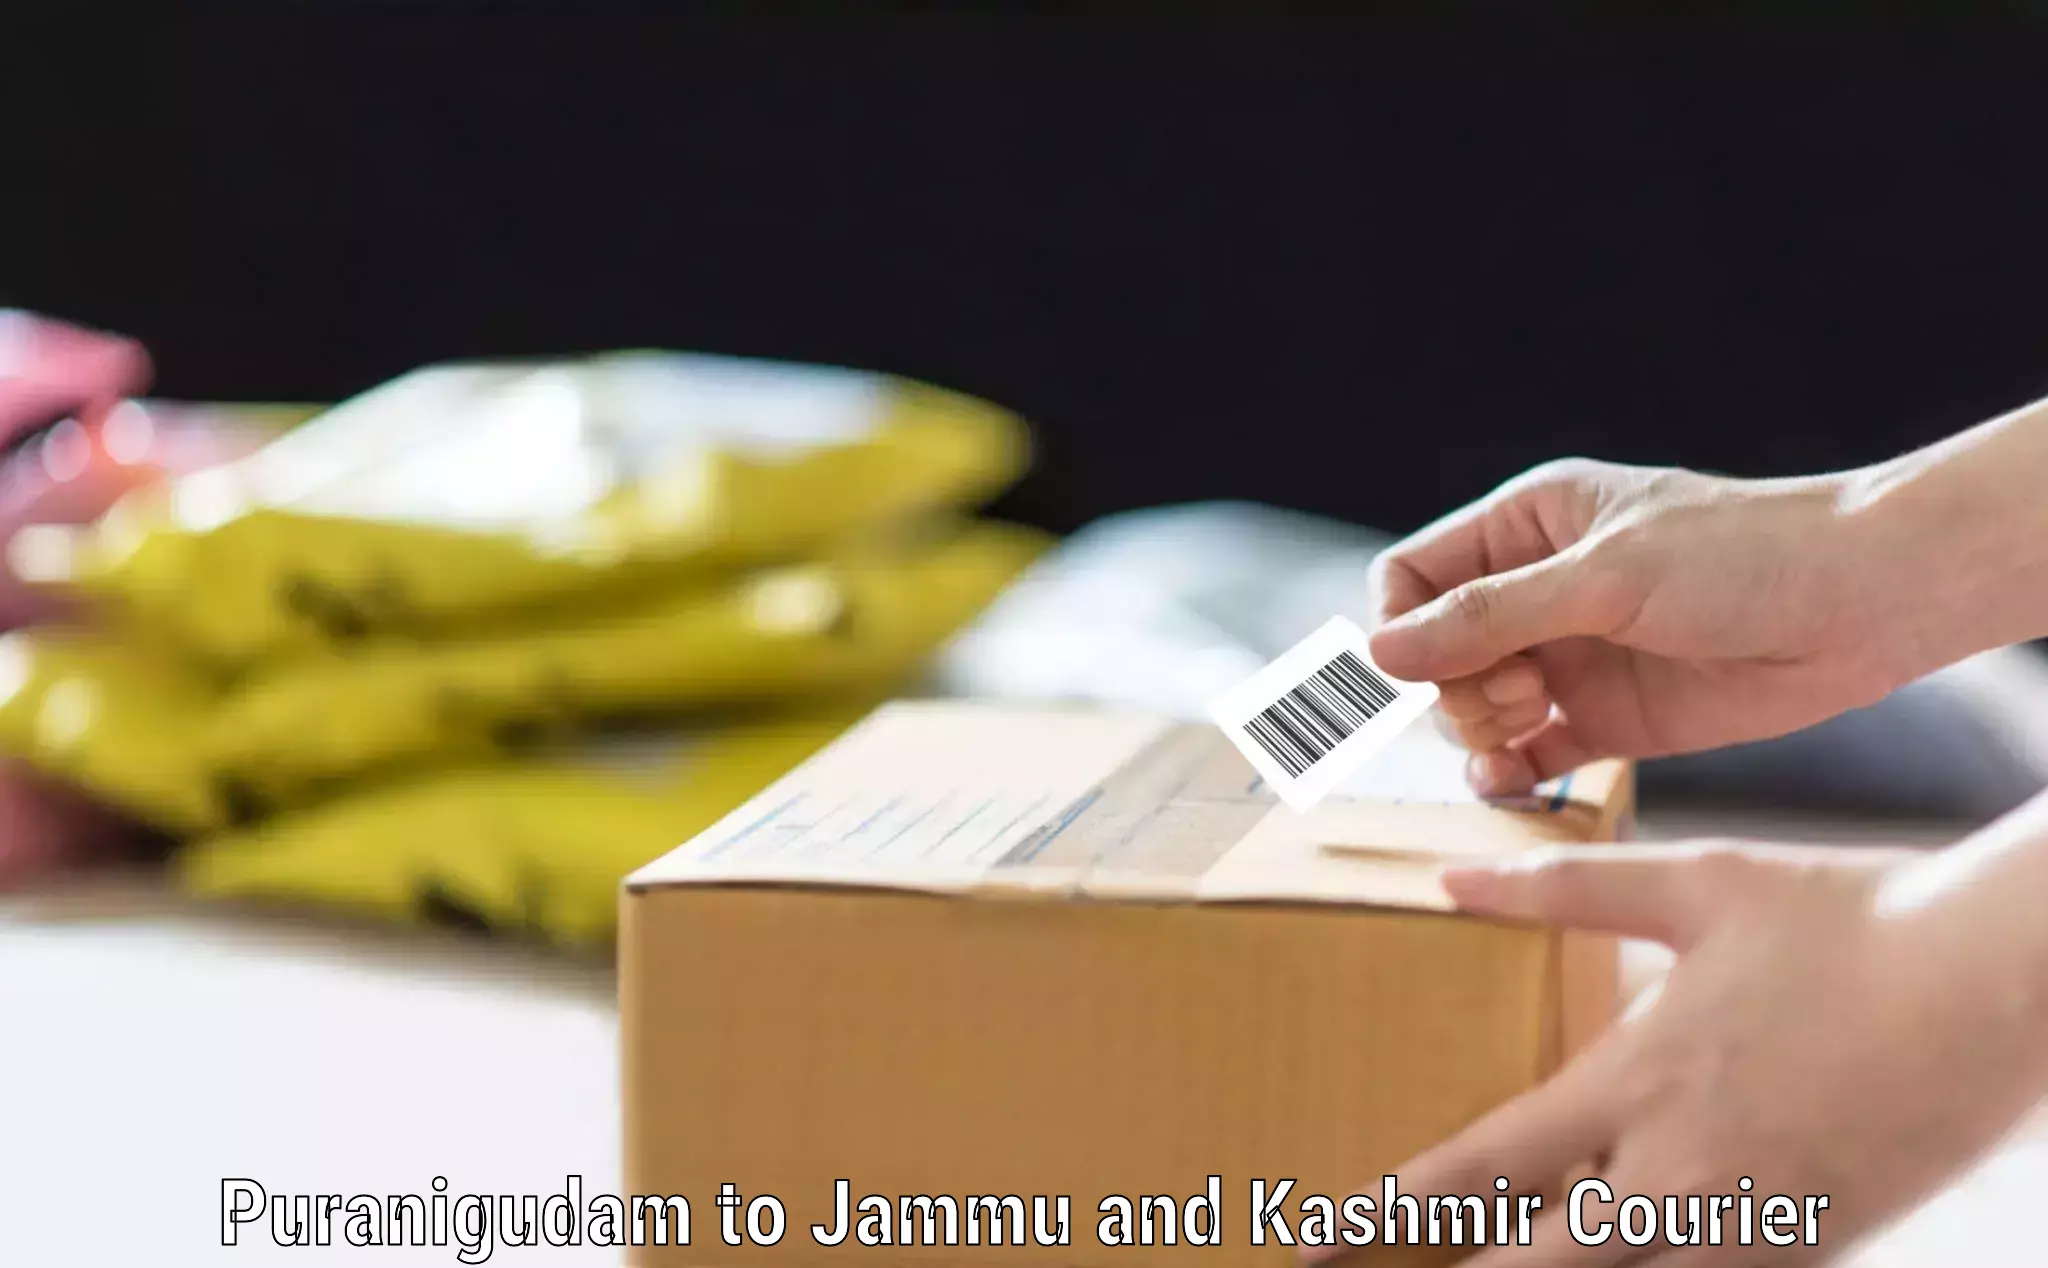 Efficient baggage courier system Puranigudam to IIT Jammu